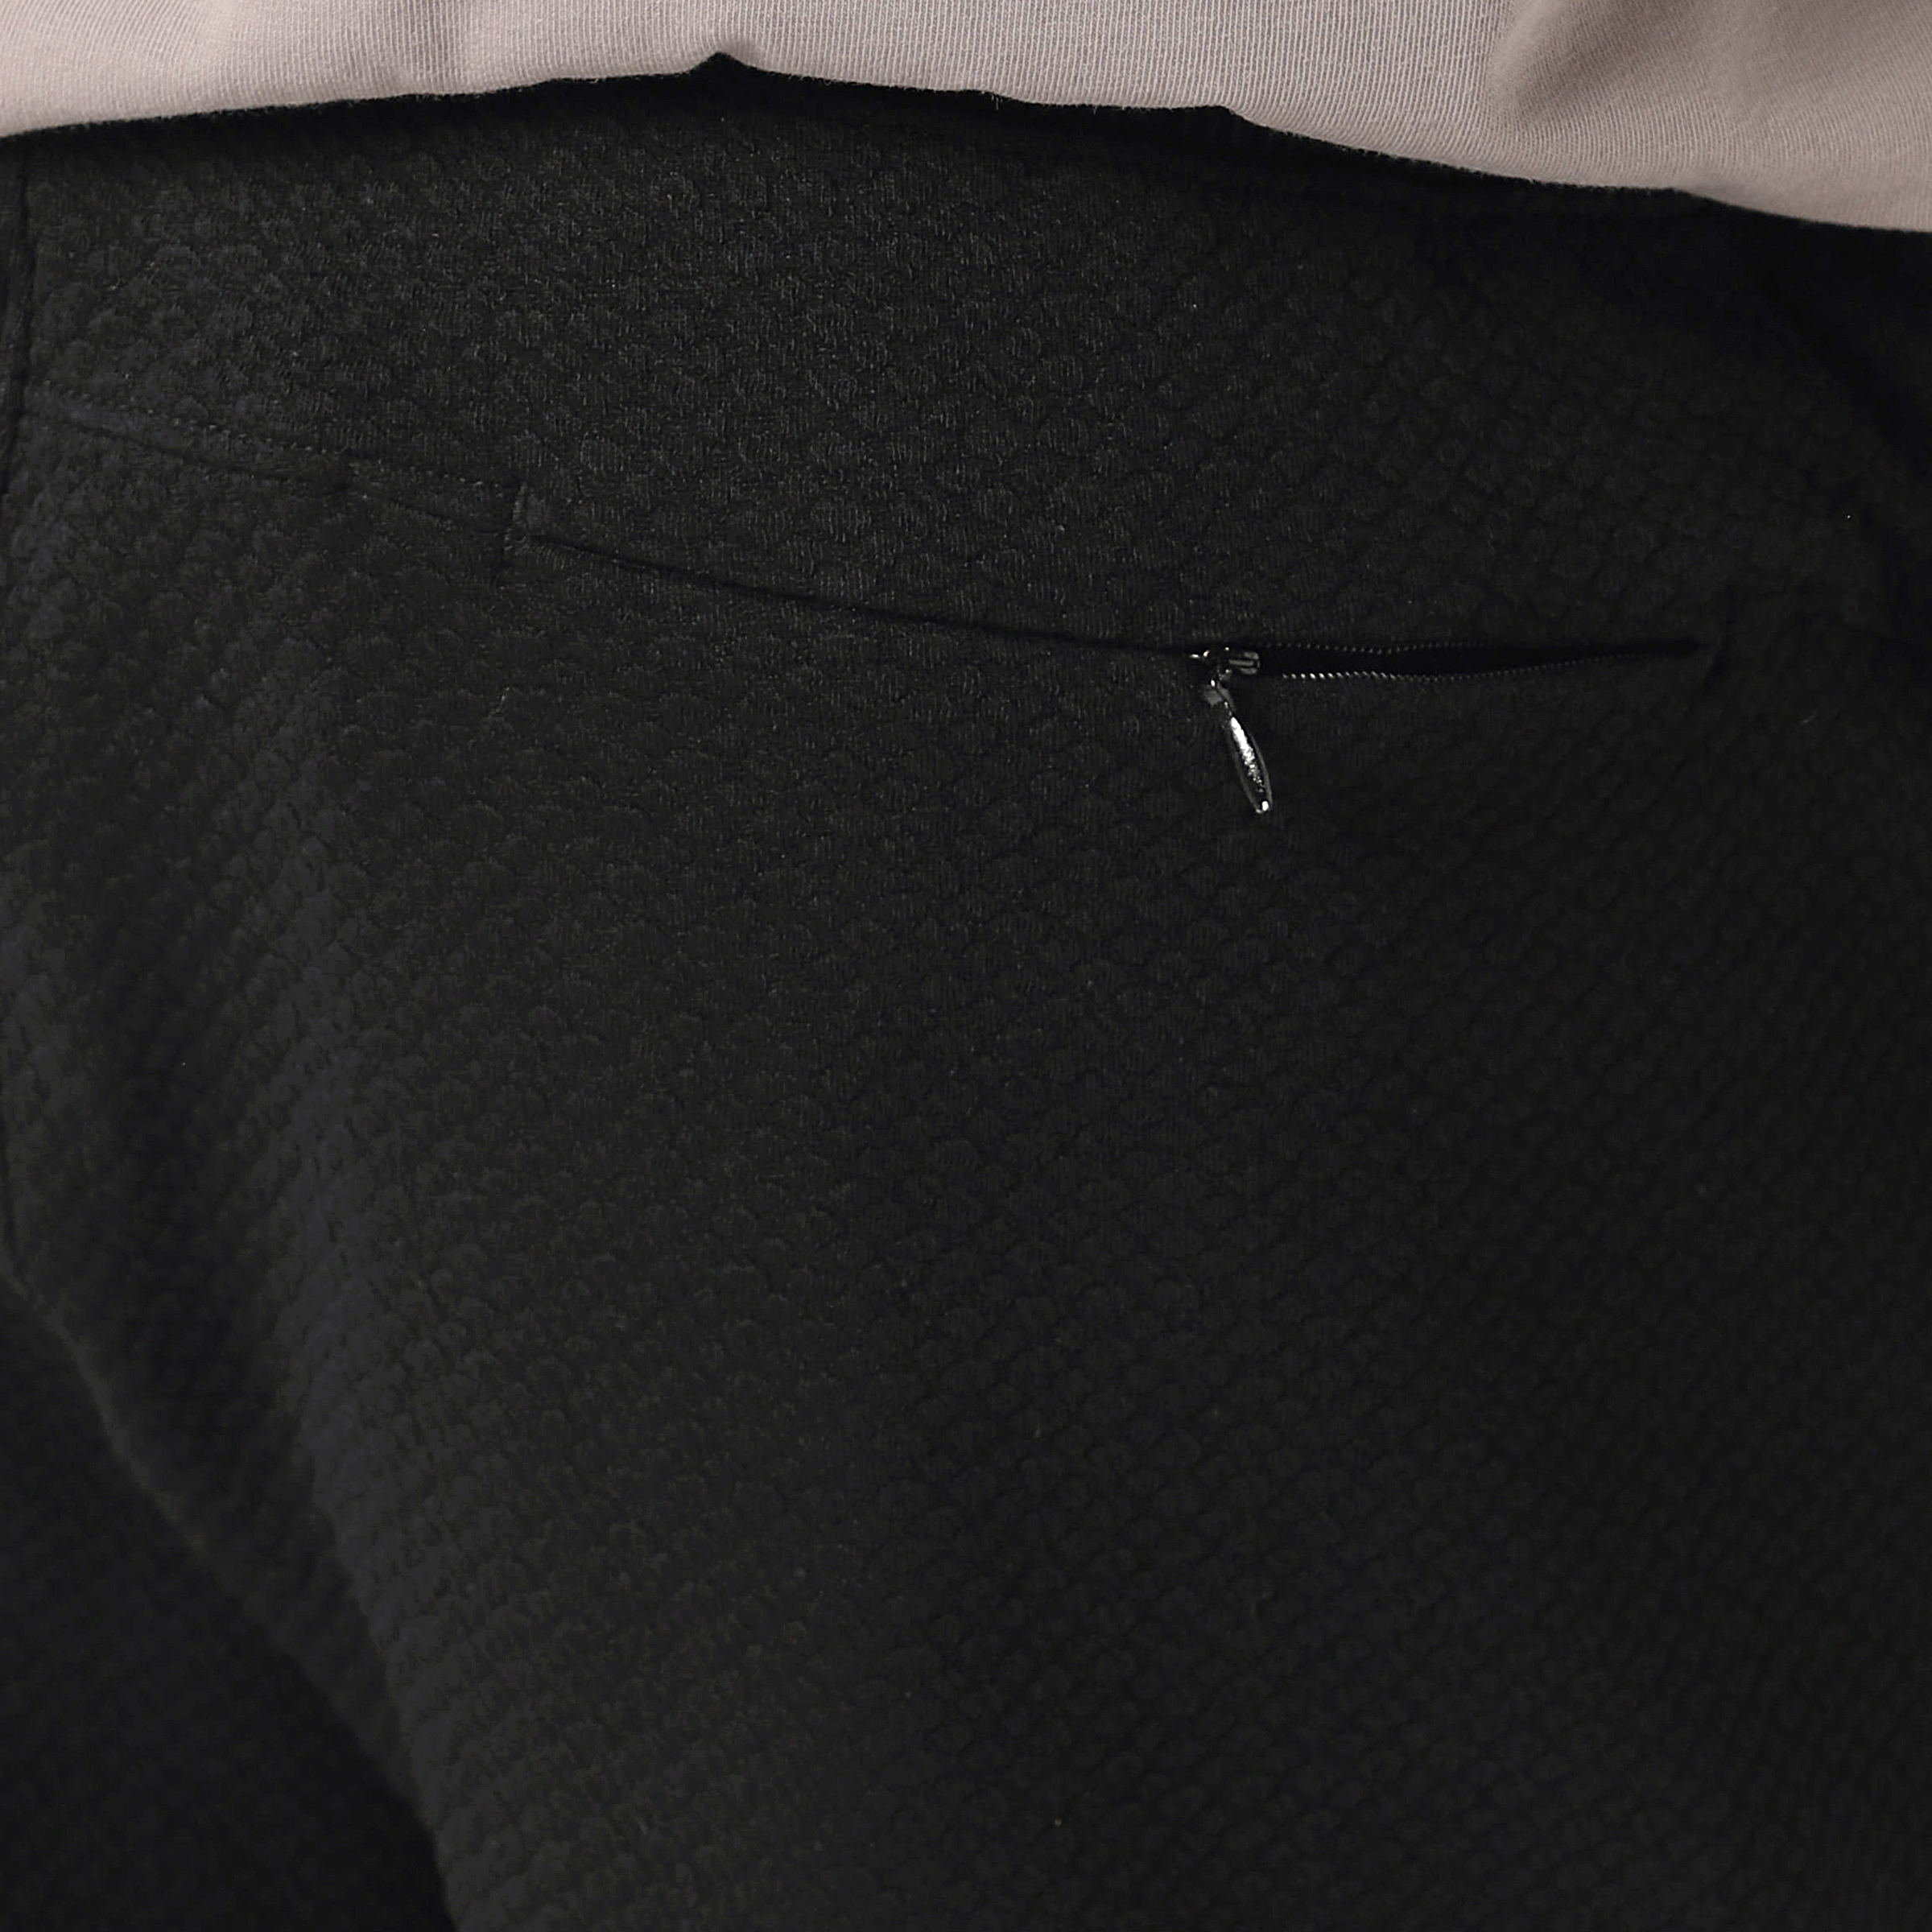 Roam Jogger Black close up of back zipper pocket